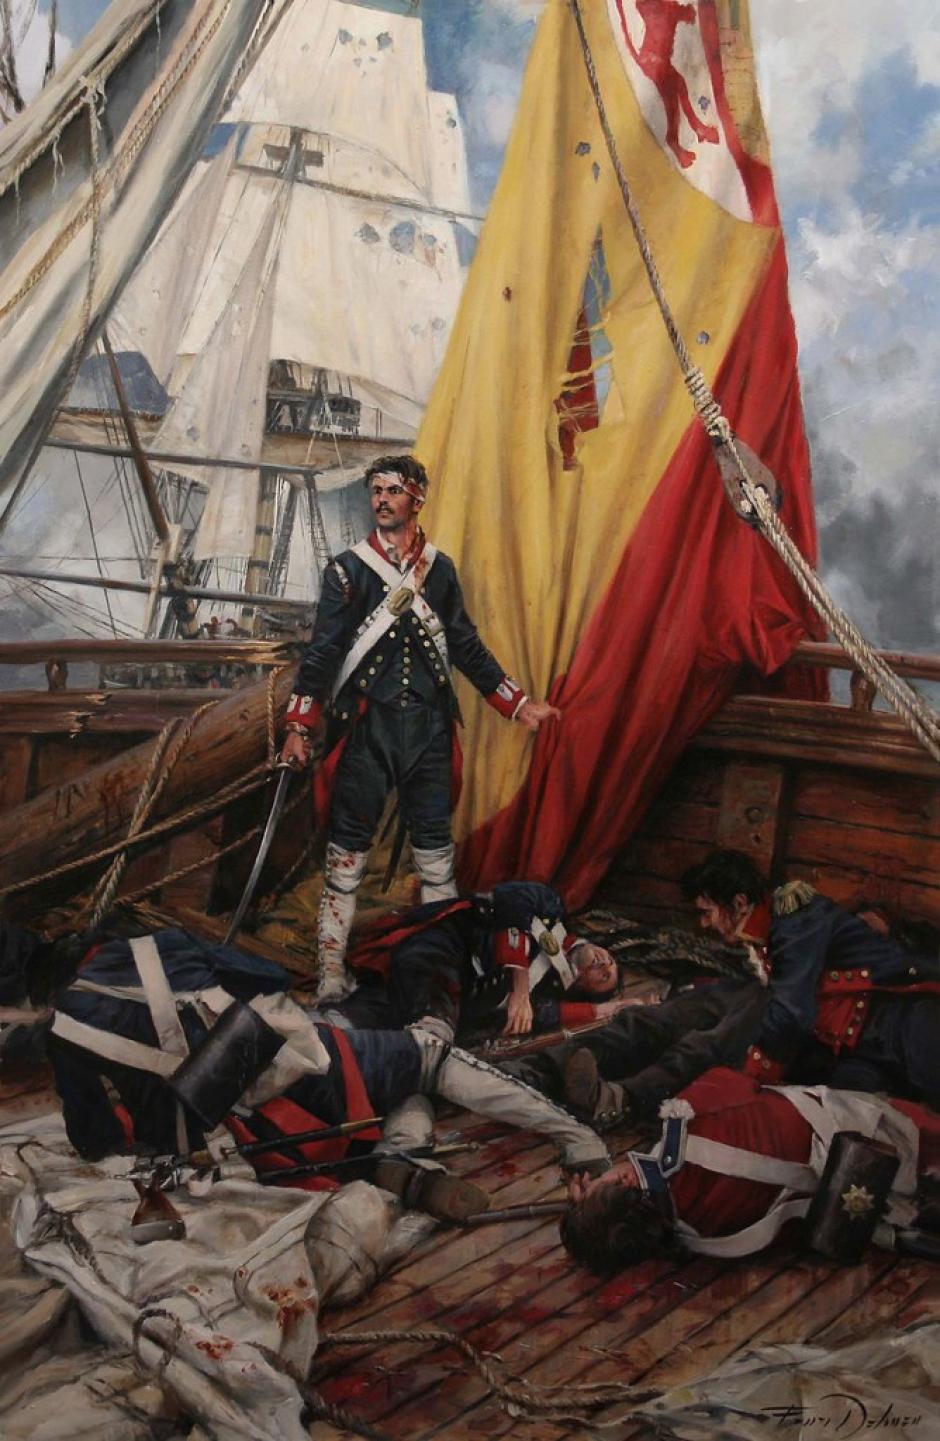 El cuadro de Martín Álvarez pintado por Augusto Ferrer-Dalmau